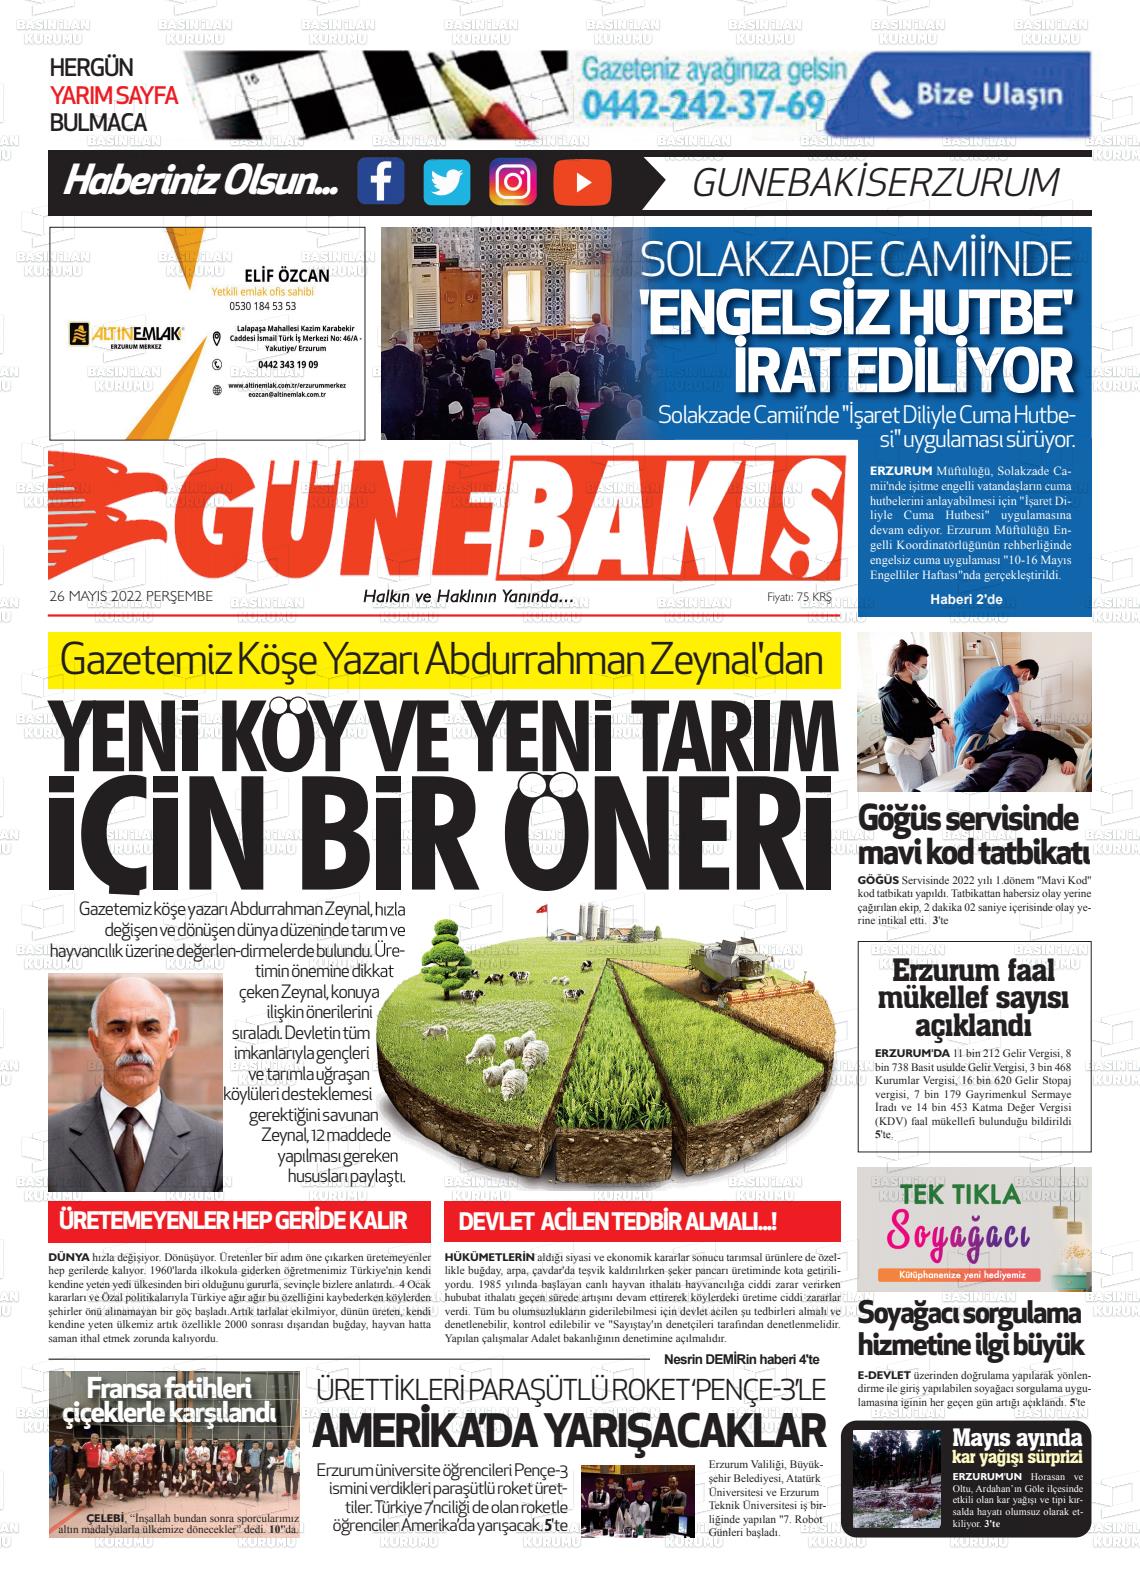 26 Mayıs 2022 Erzurum Günebakış Gazete Manşeti